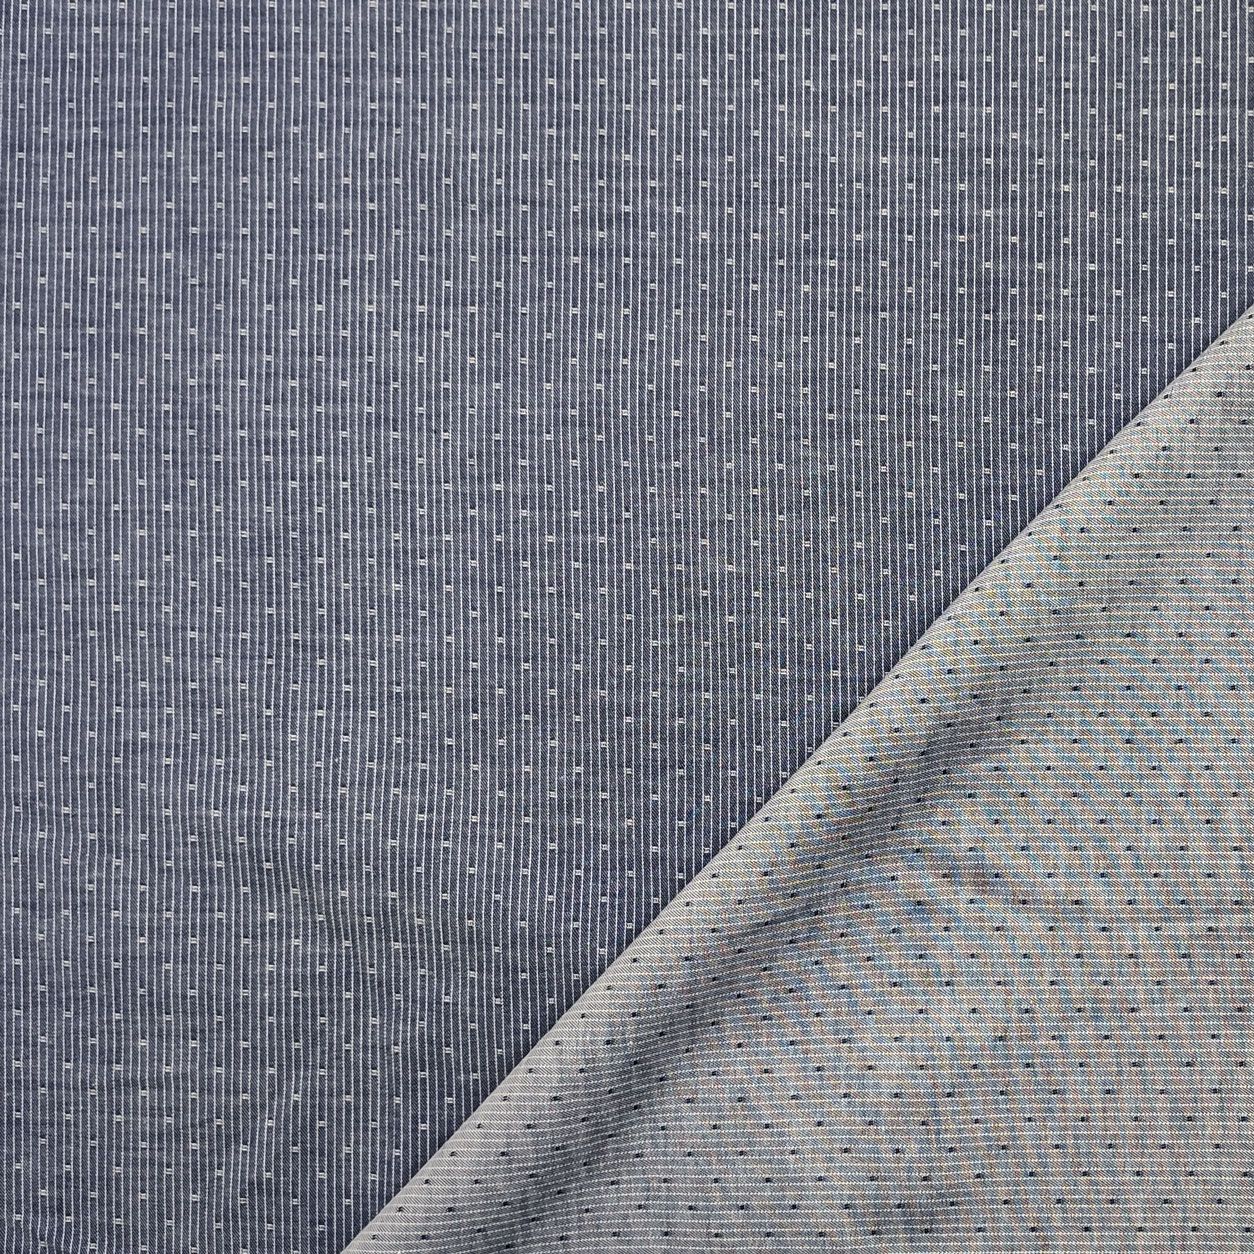 cotone-per-camicia-microfantasia-sfondo-azzurro